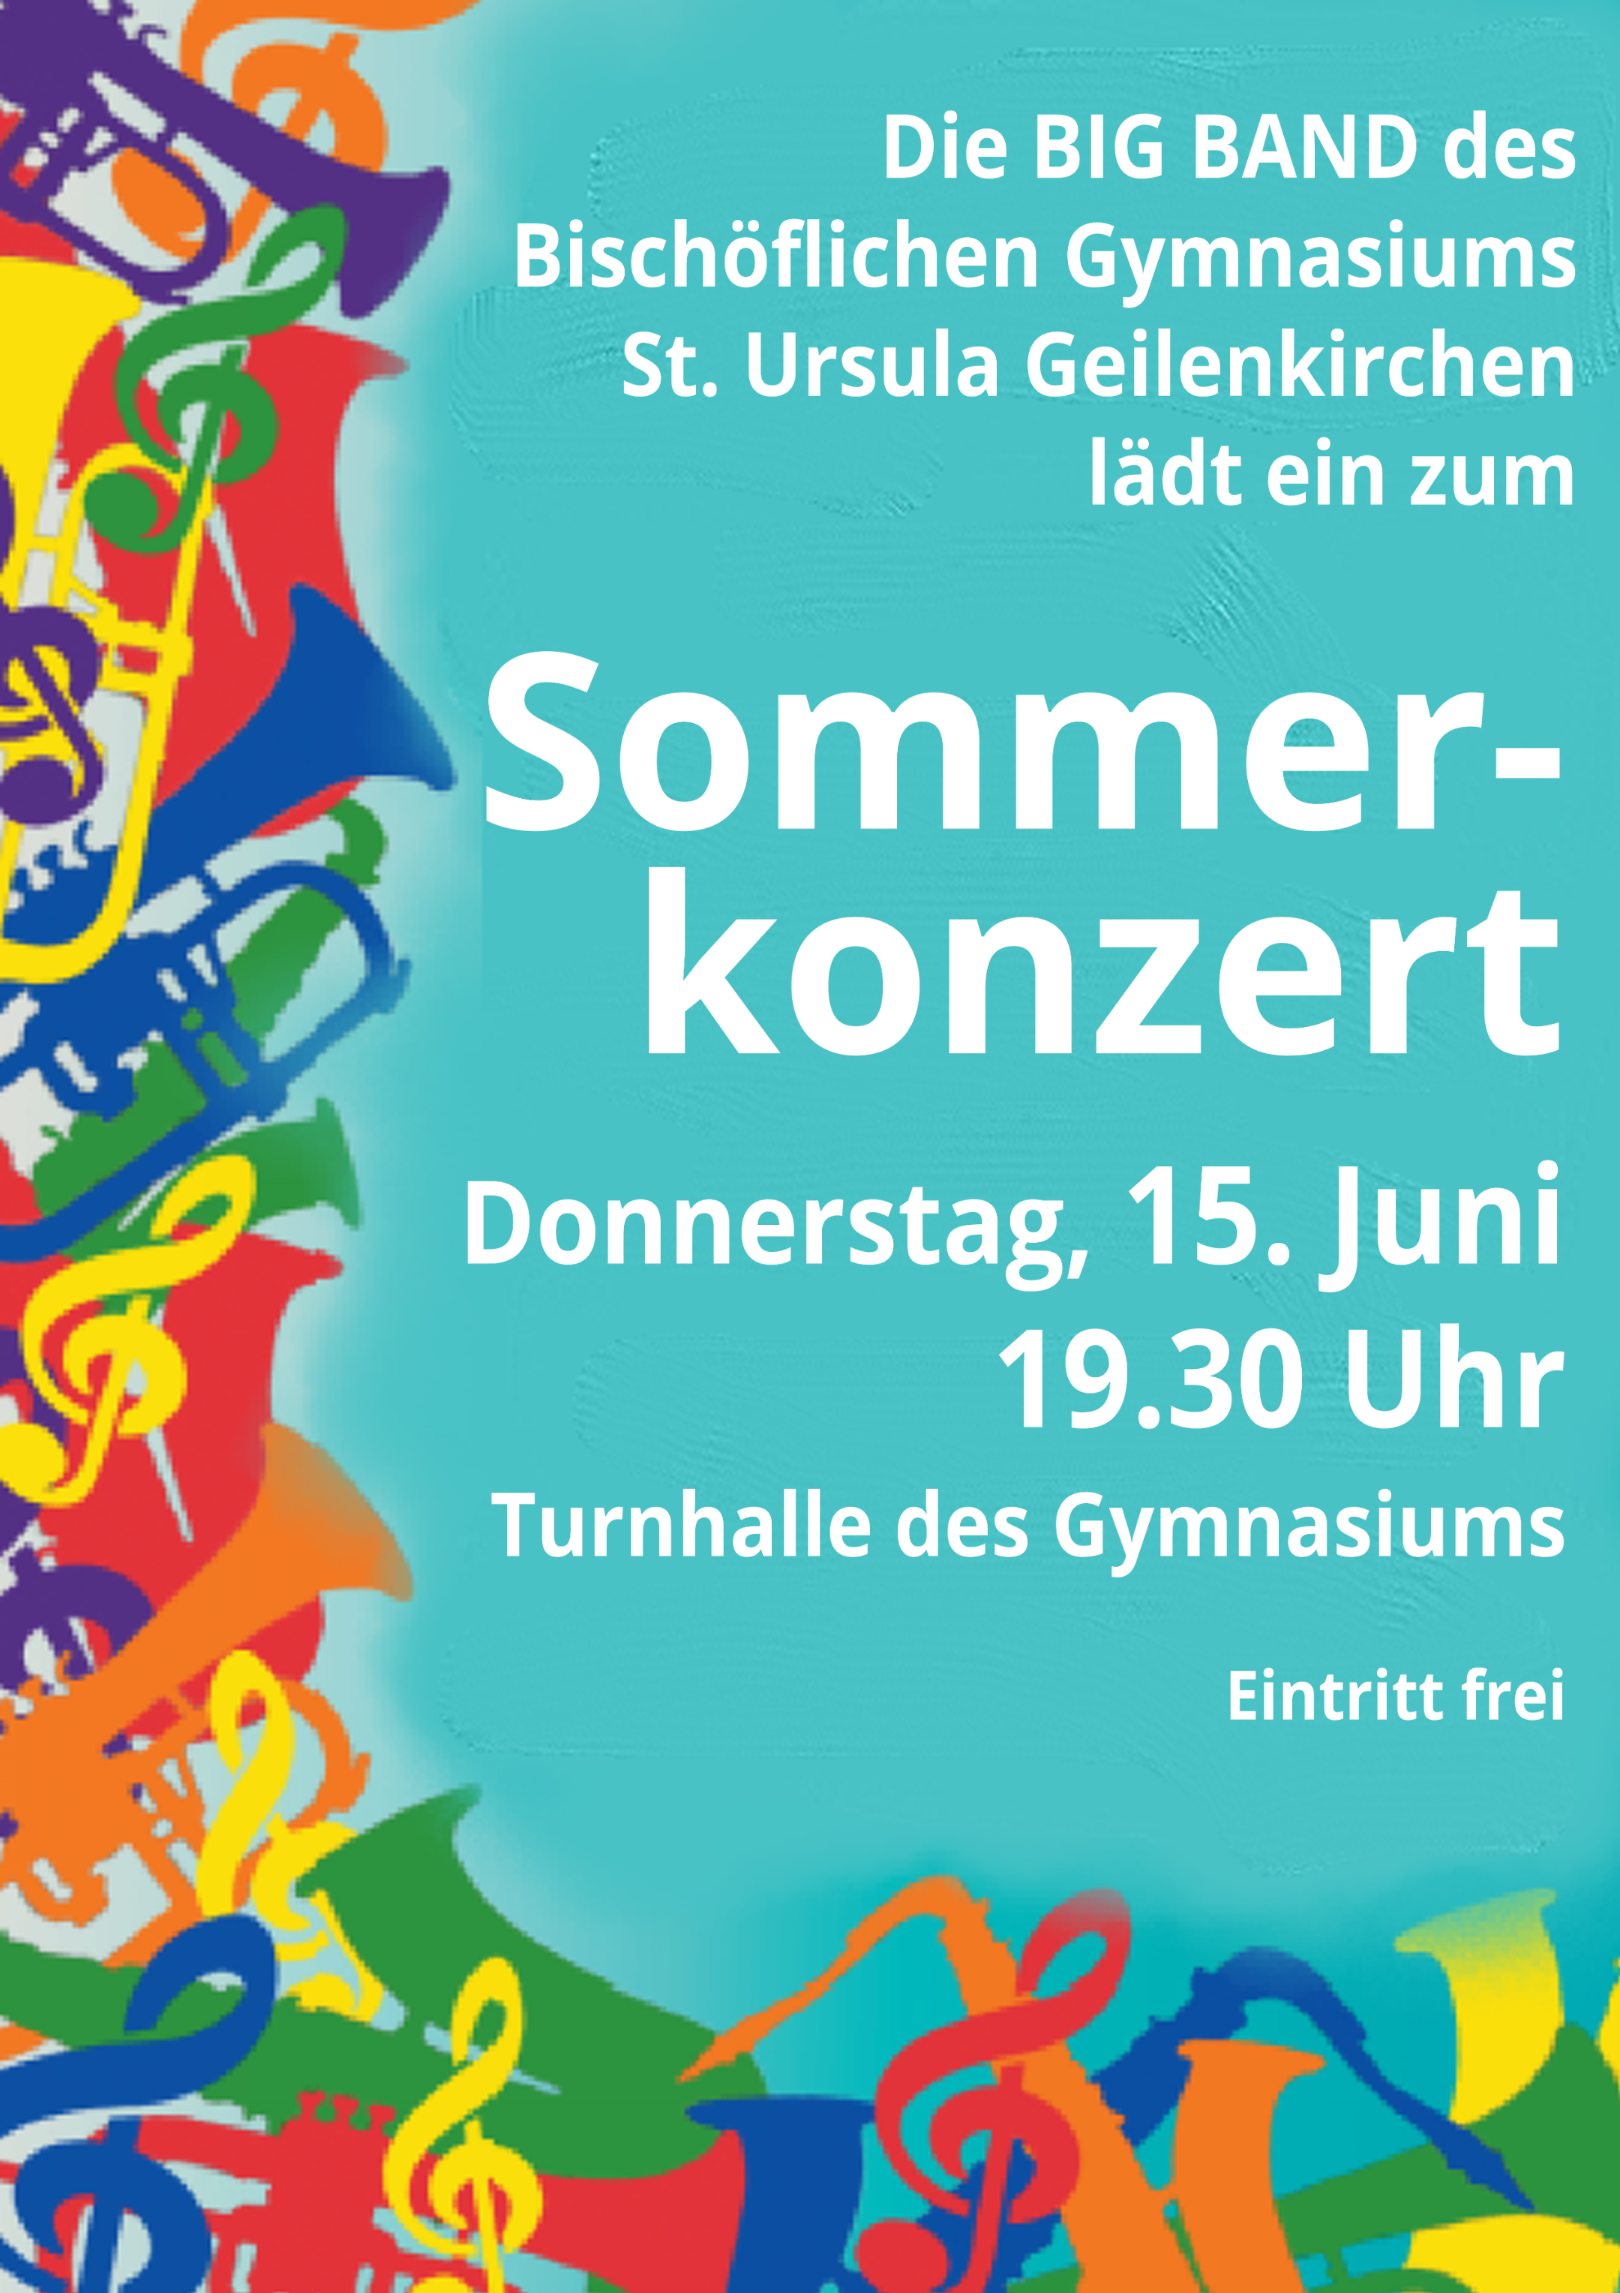 Sommerkonzert der Big Band 2023 (c) Bischöfliches Gymnasium St. Ursula Geilenkirchen